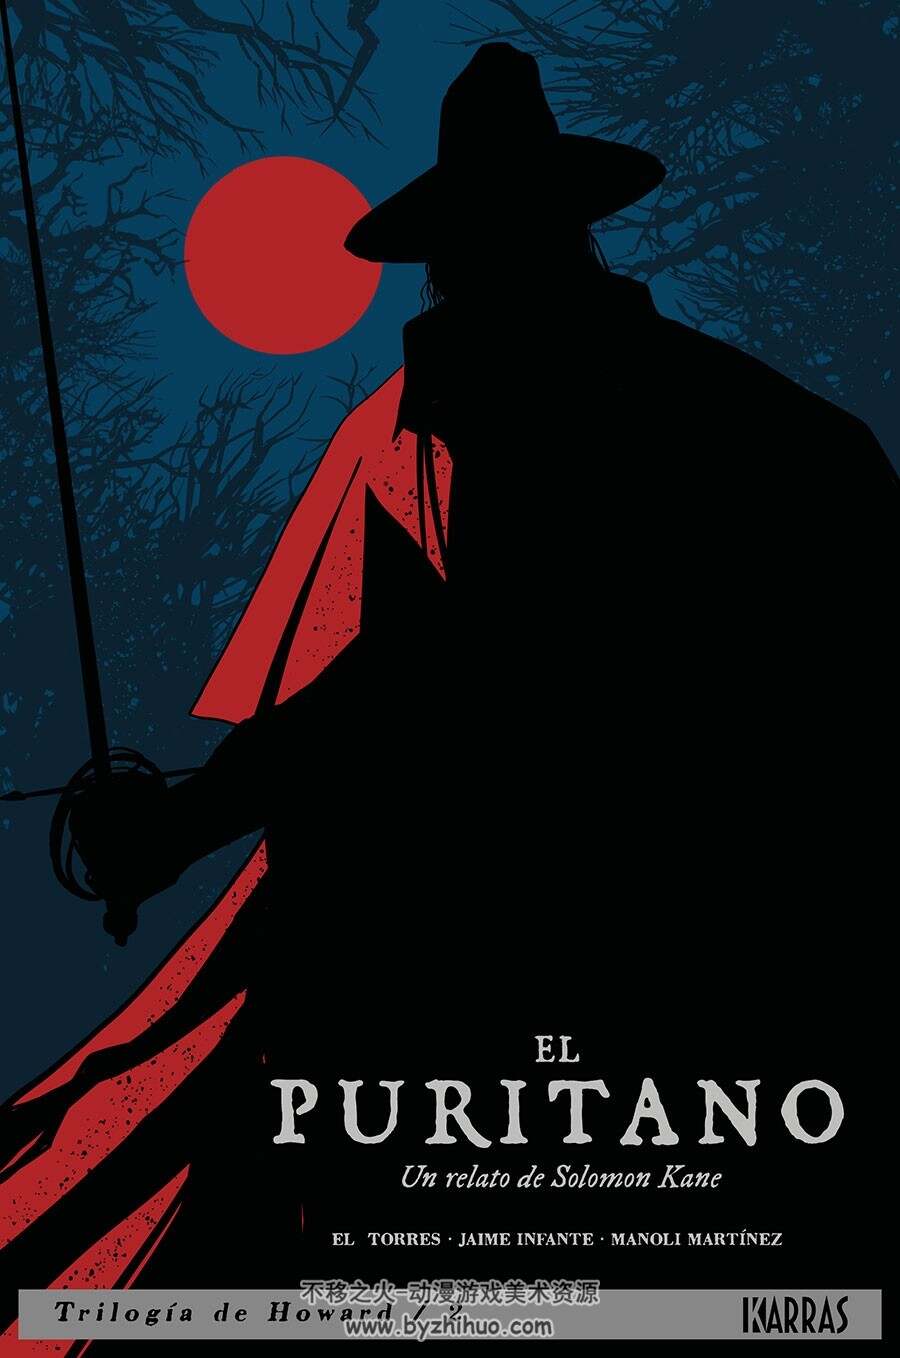 Trilogía Howard 第2册 [共2册] El Puritano 漫画下载